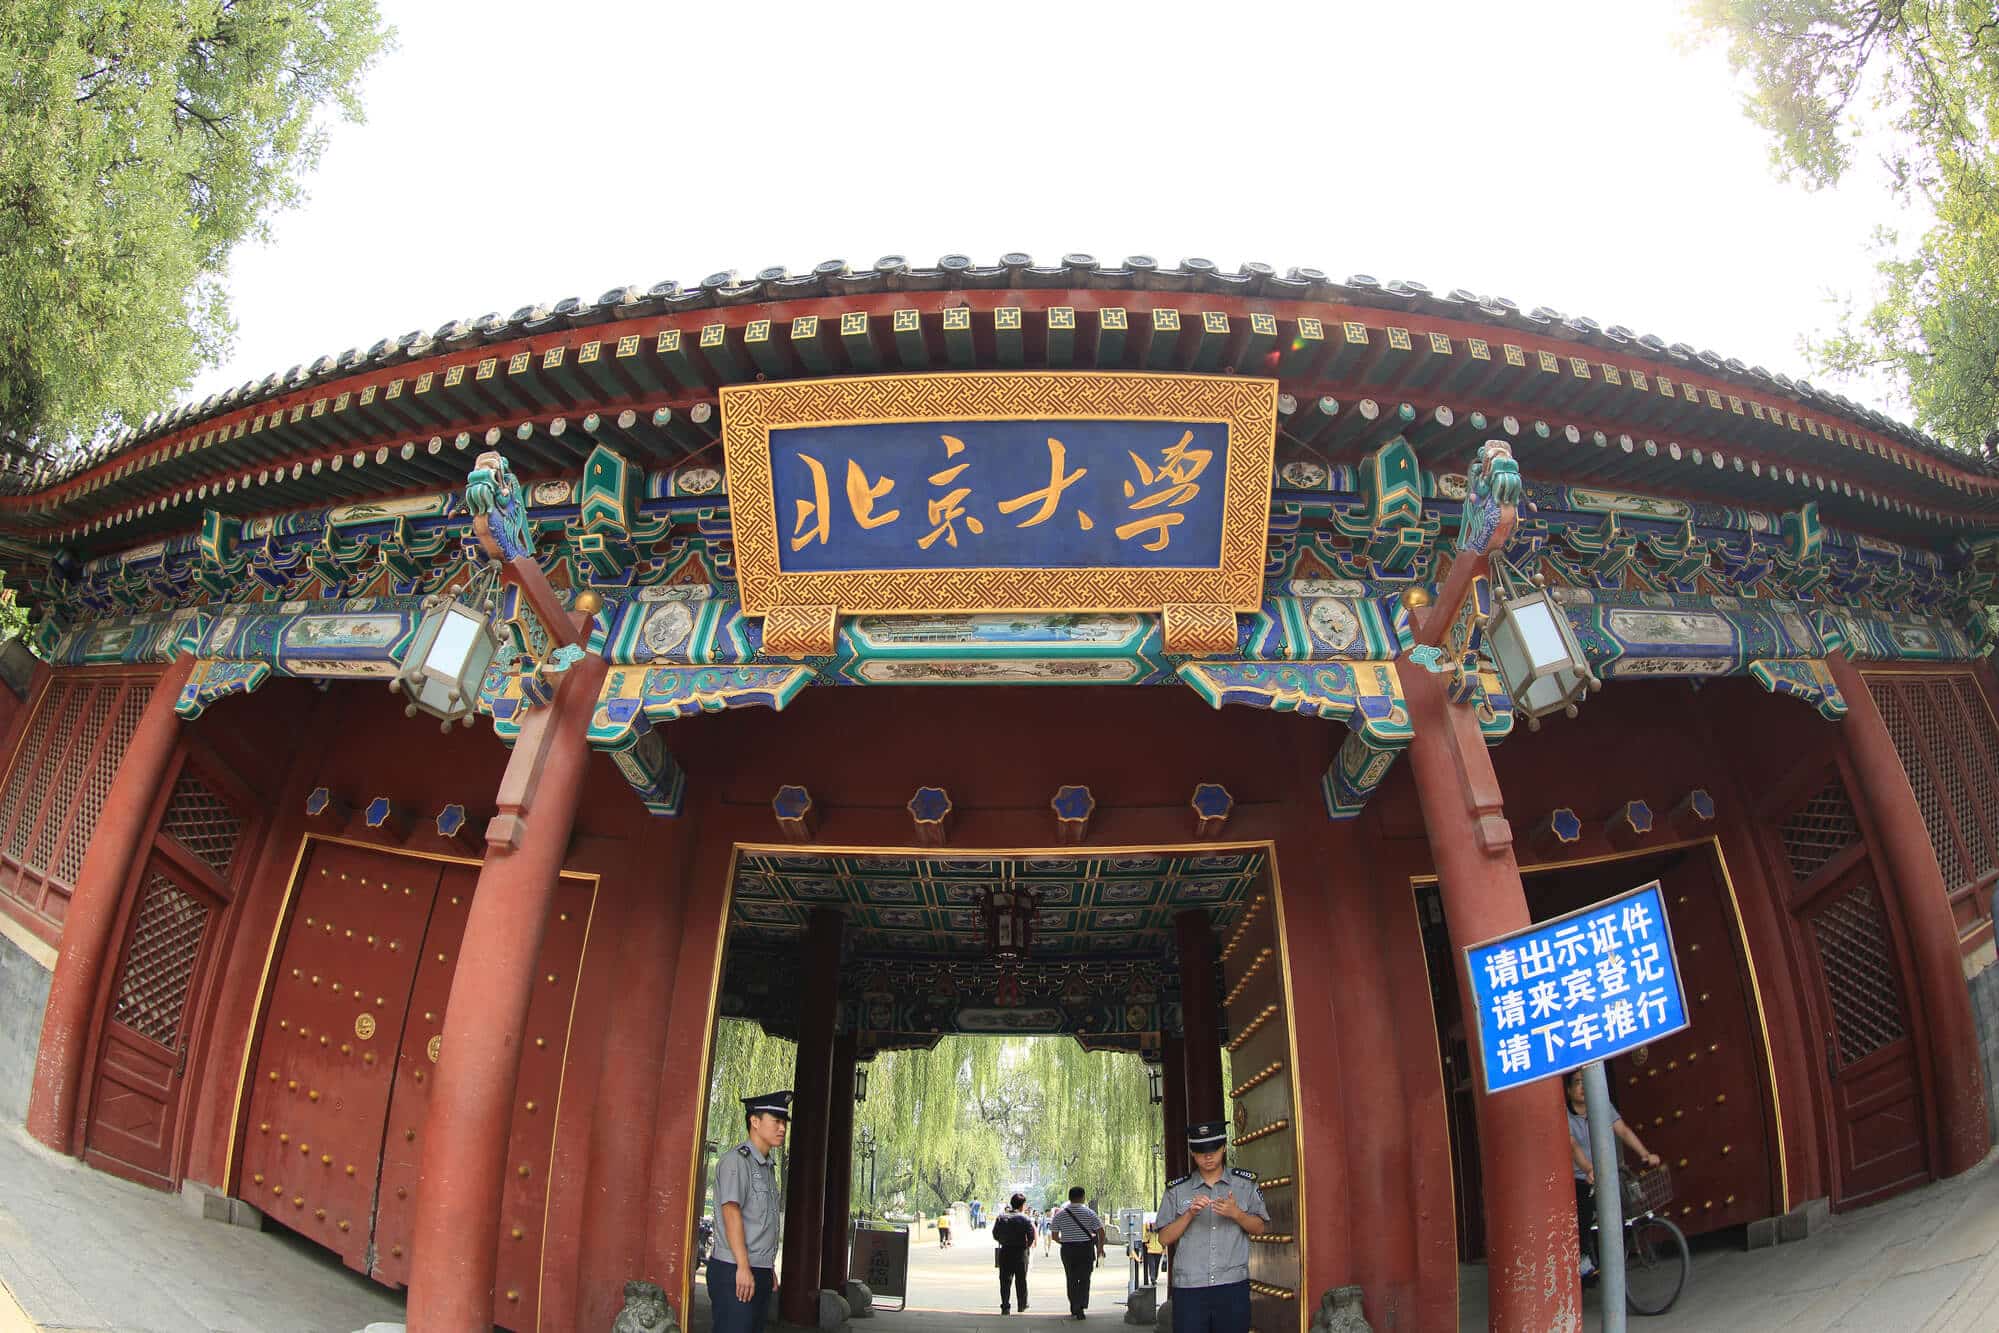 אחד משערי אוניברסיטת פקין בביג'ינג.    <a href="https://depositphotos.com. ">המחשה: depositphotos.com</a>